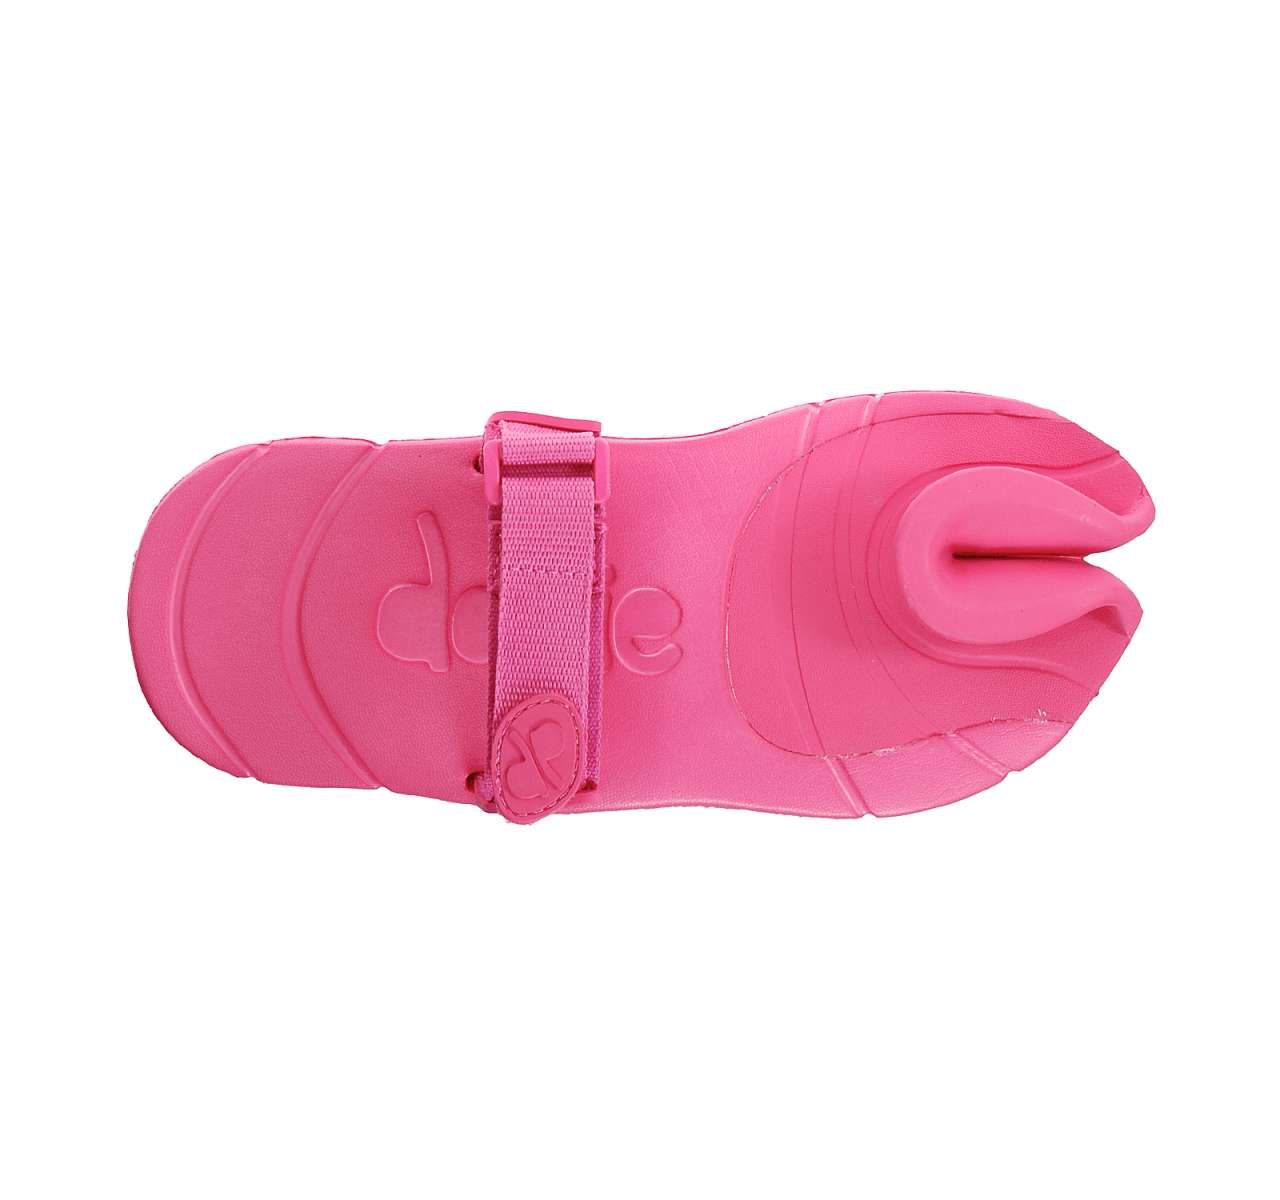 Dámská vycházková obuv VIVOBAREFOOT Dopie Pink